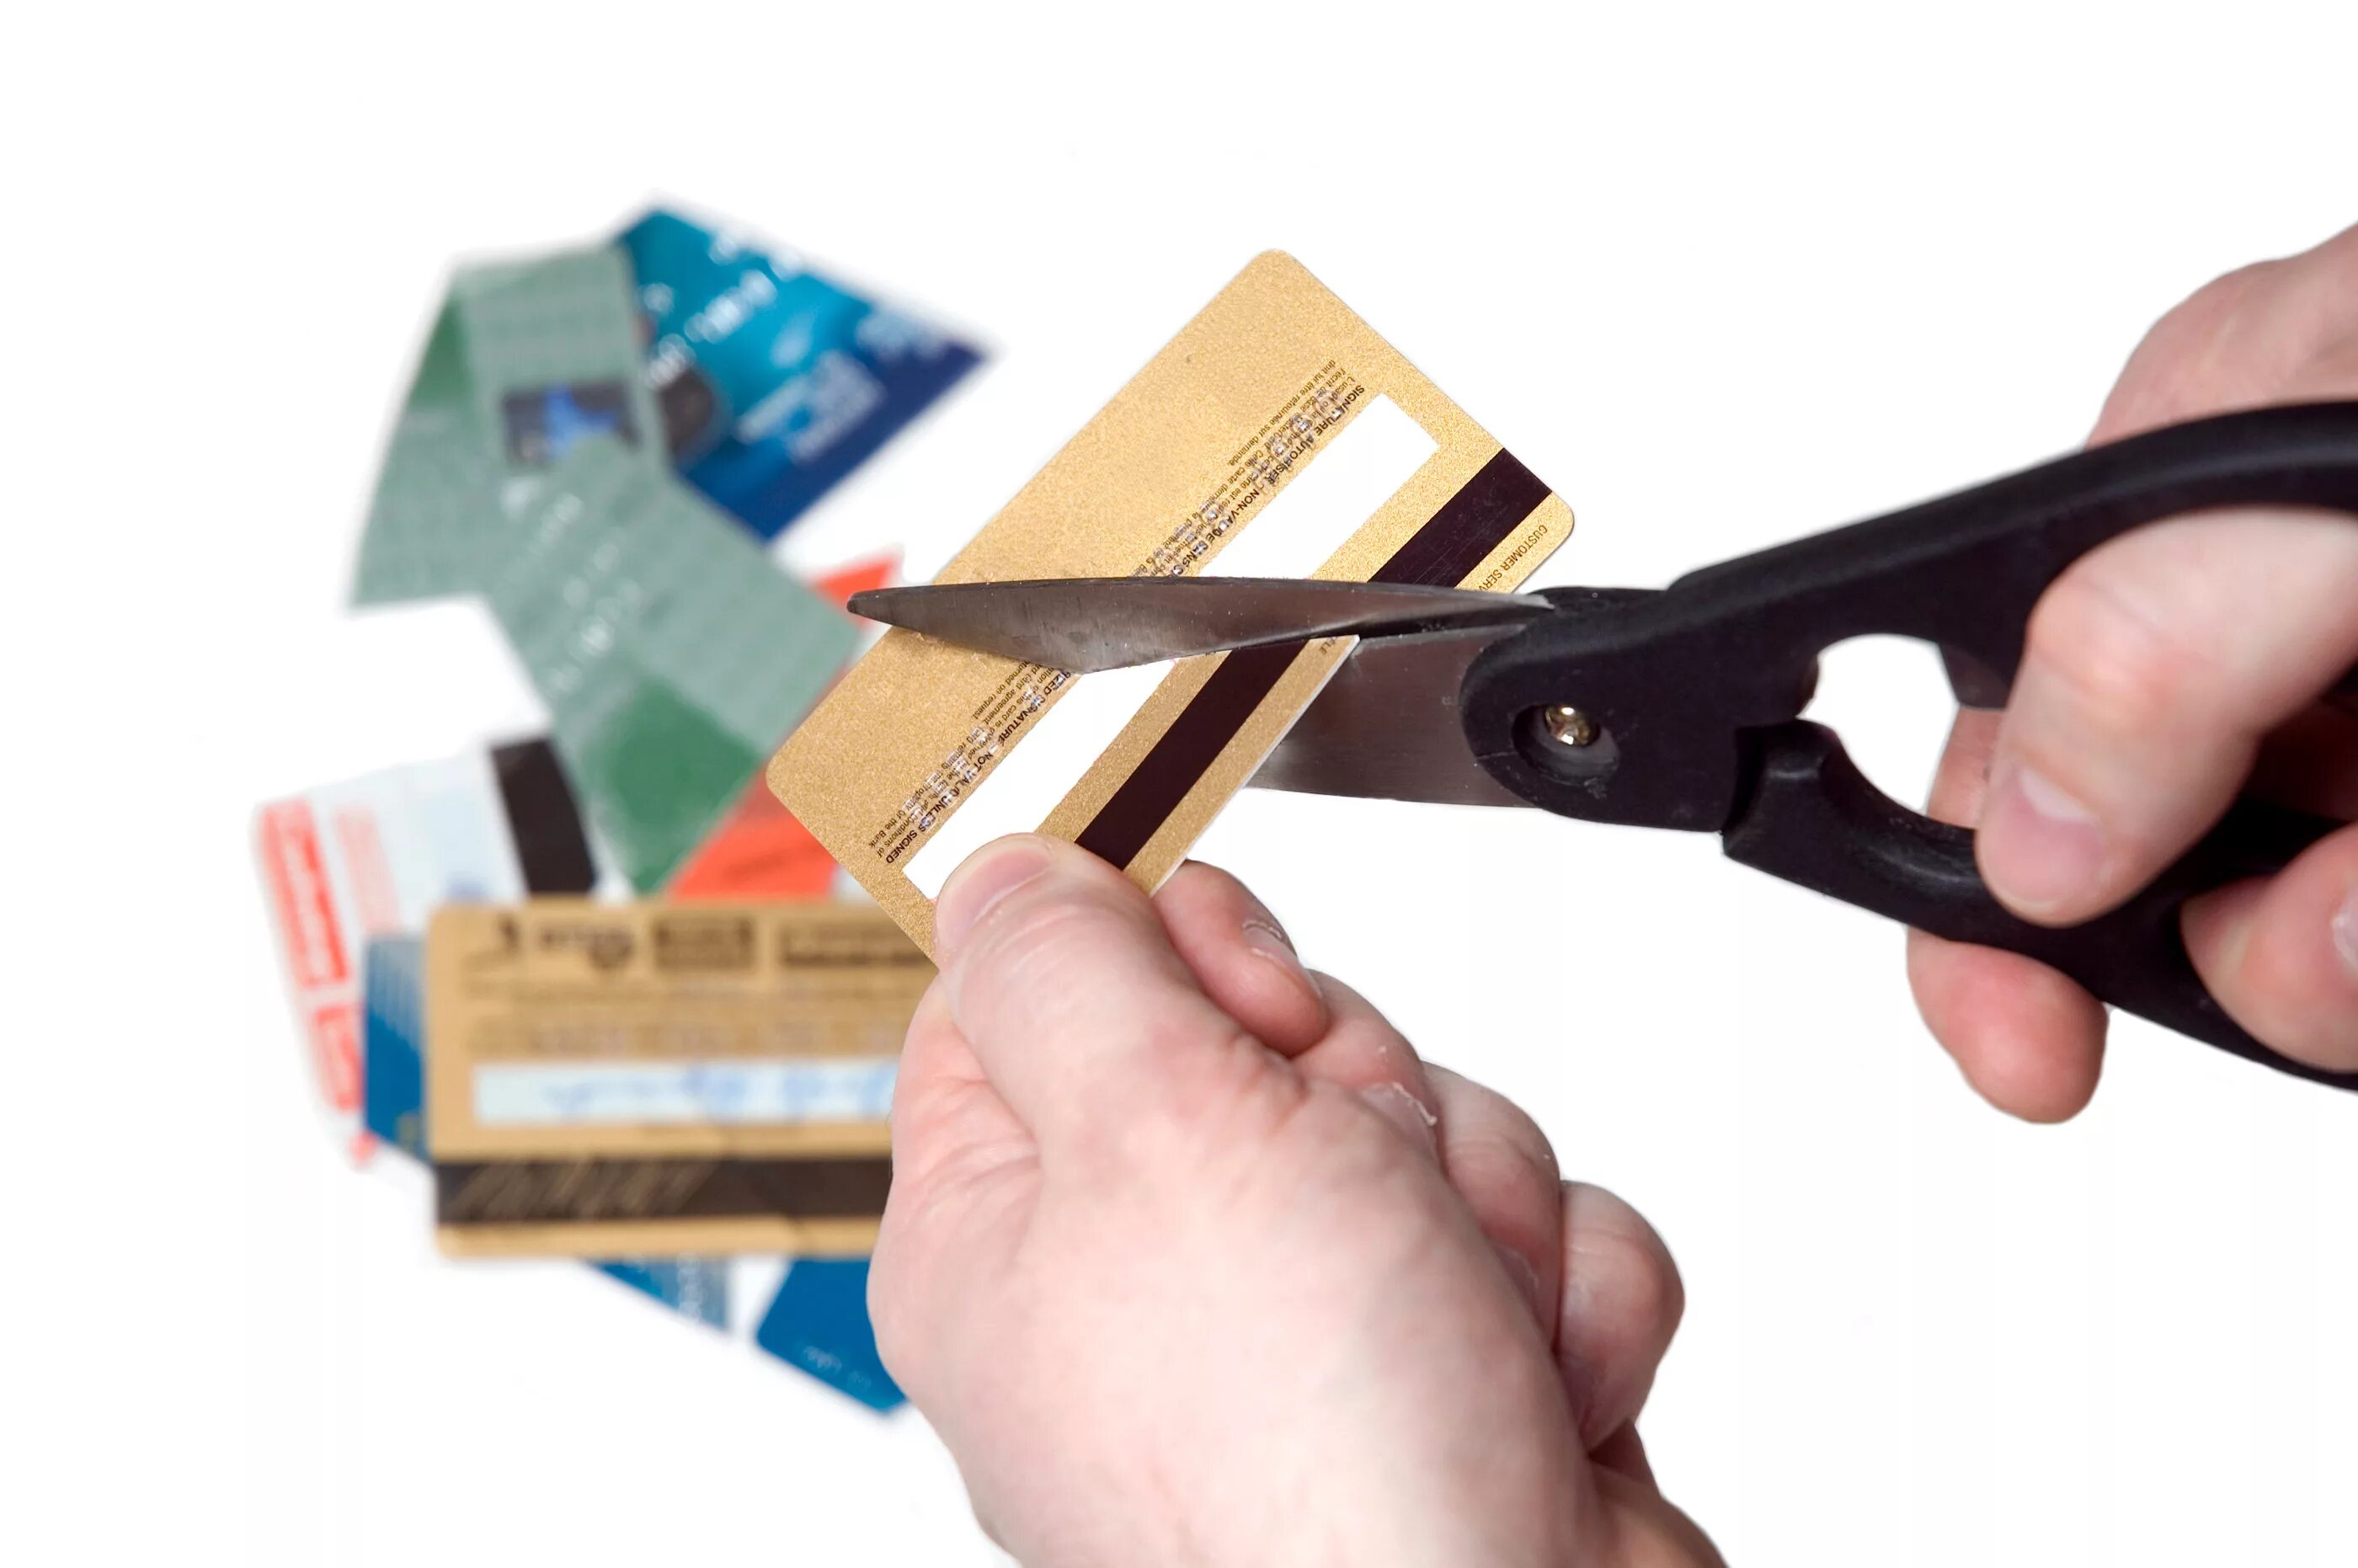 Задание банковским картам. Разрезают пластиковую карту. Разрезанная кредитка. Разрезанная банковская карта. Уничтожение пластиковых карт.